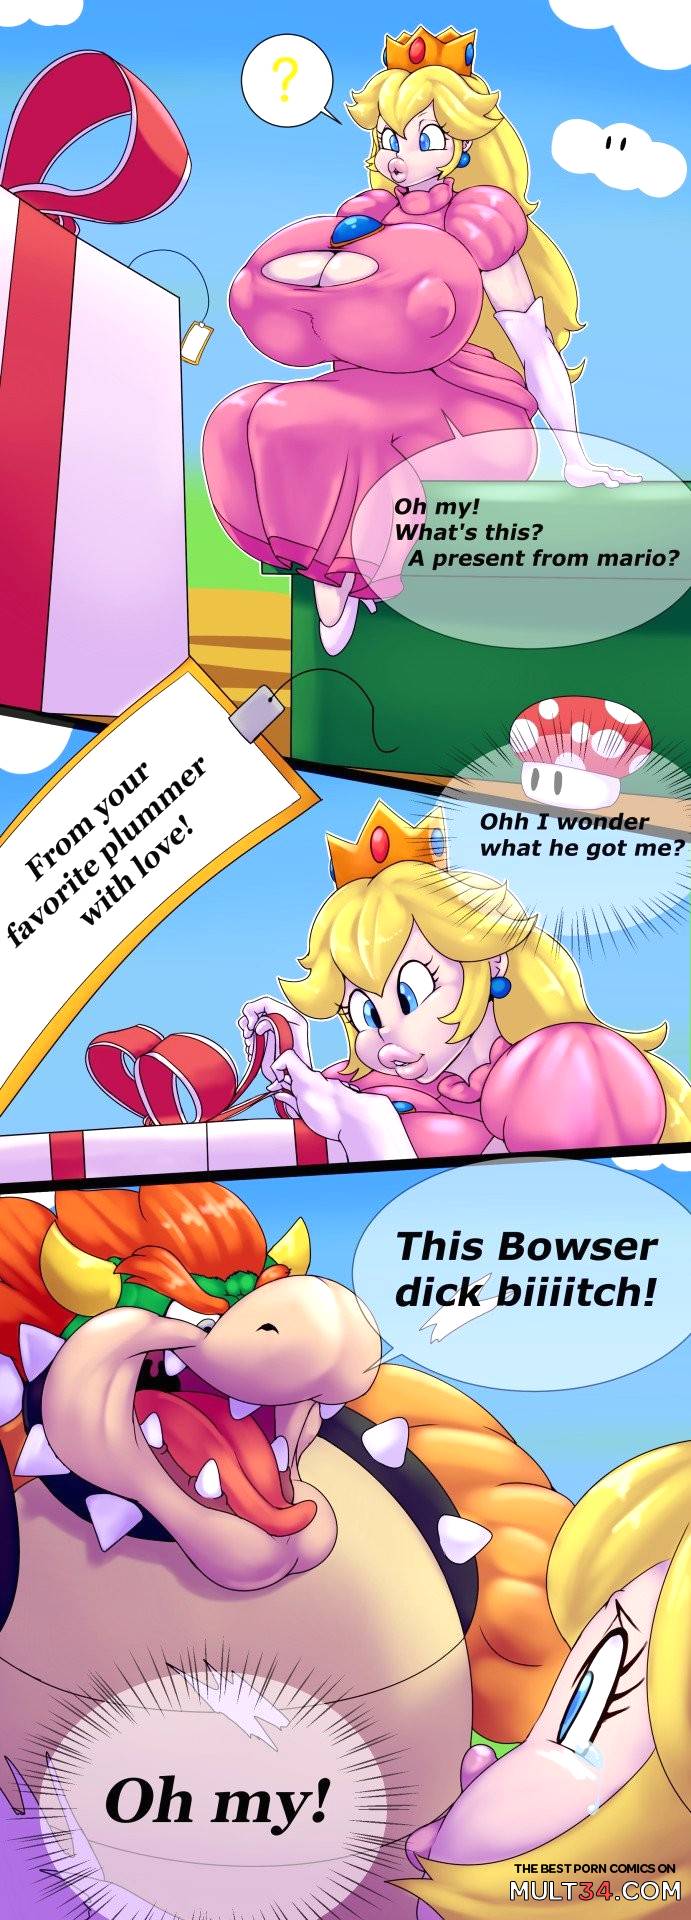 Mario porn comcis